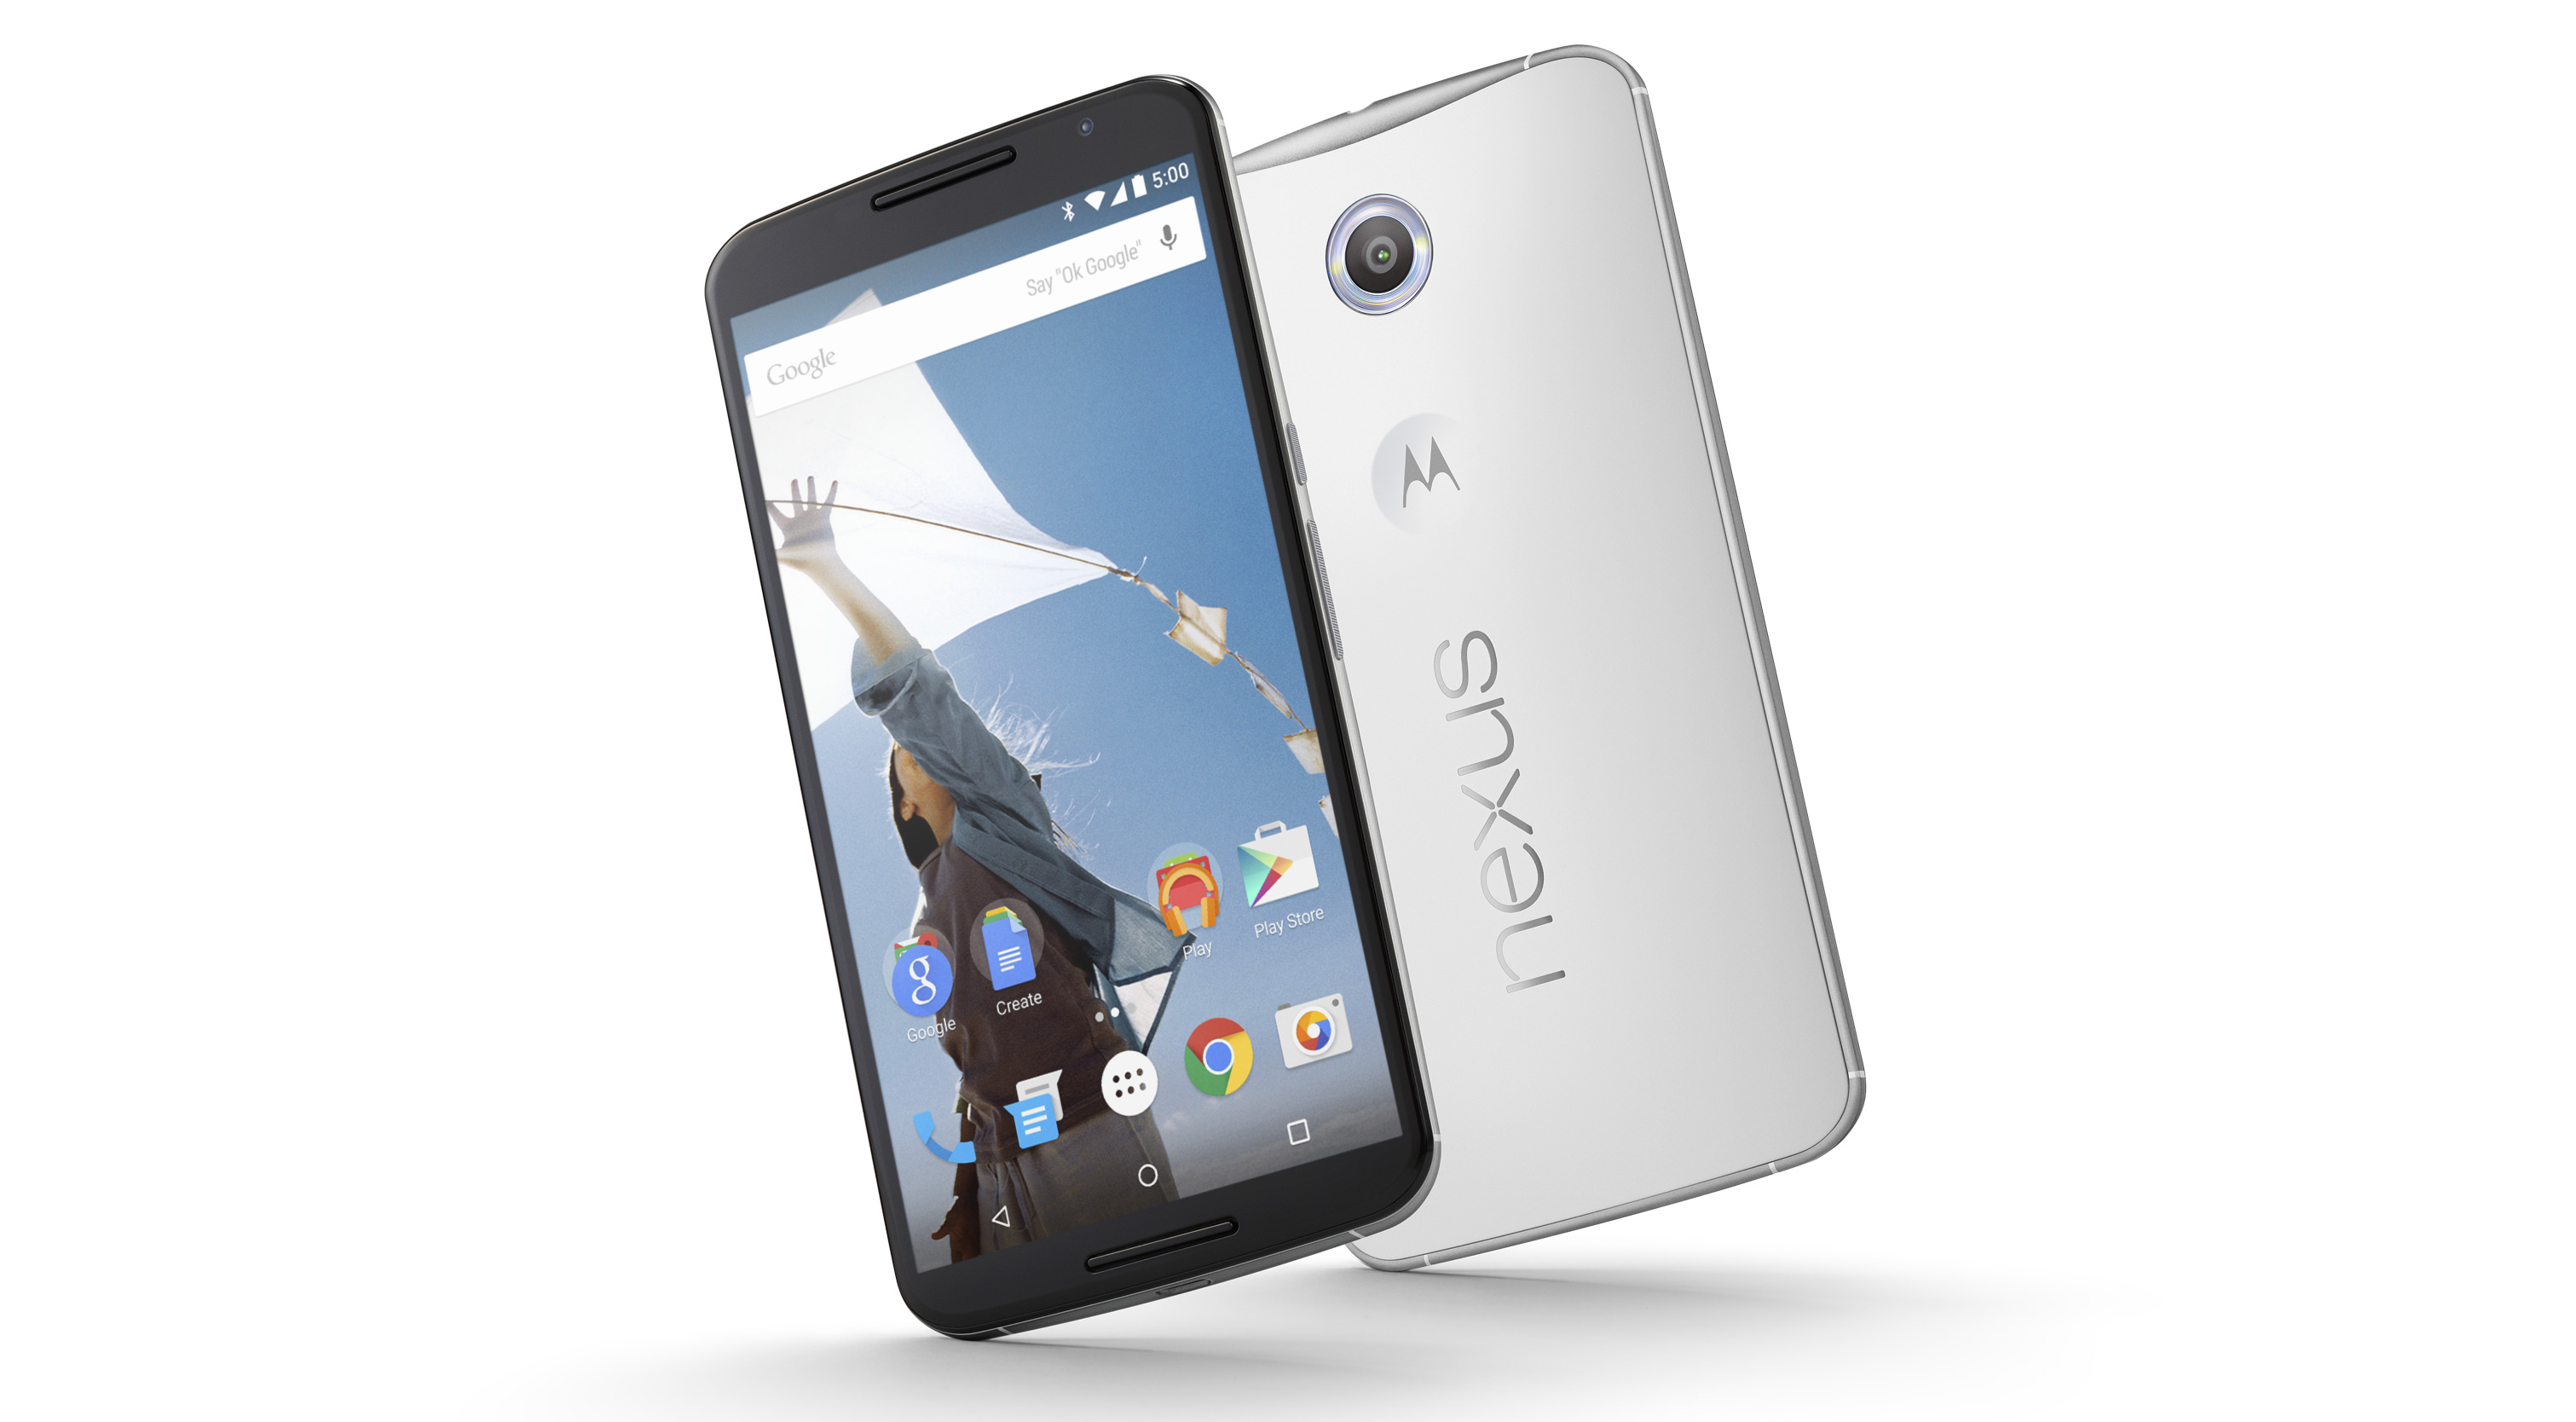 nexus 6 android 7.1.1 speakerphone echo bug fixed